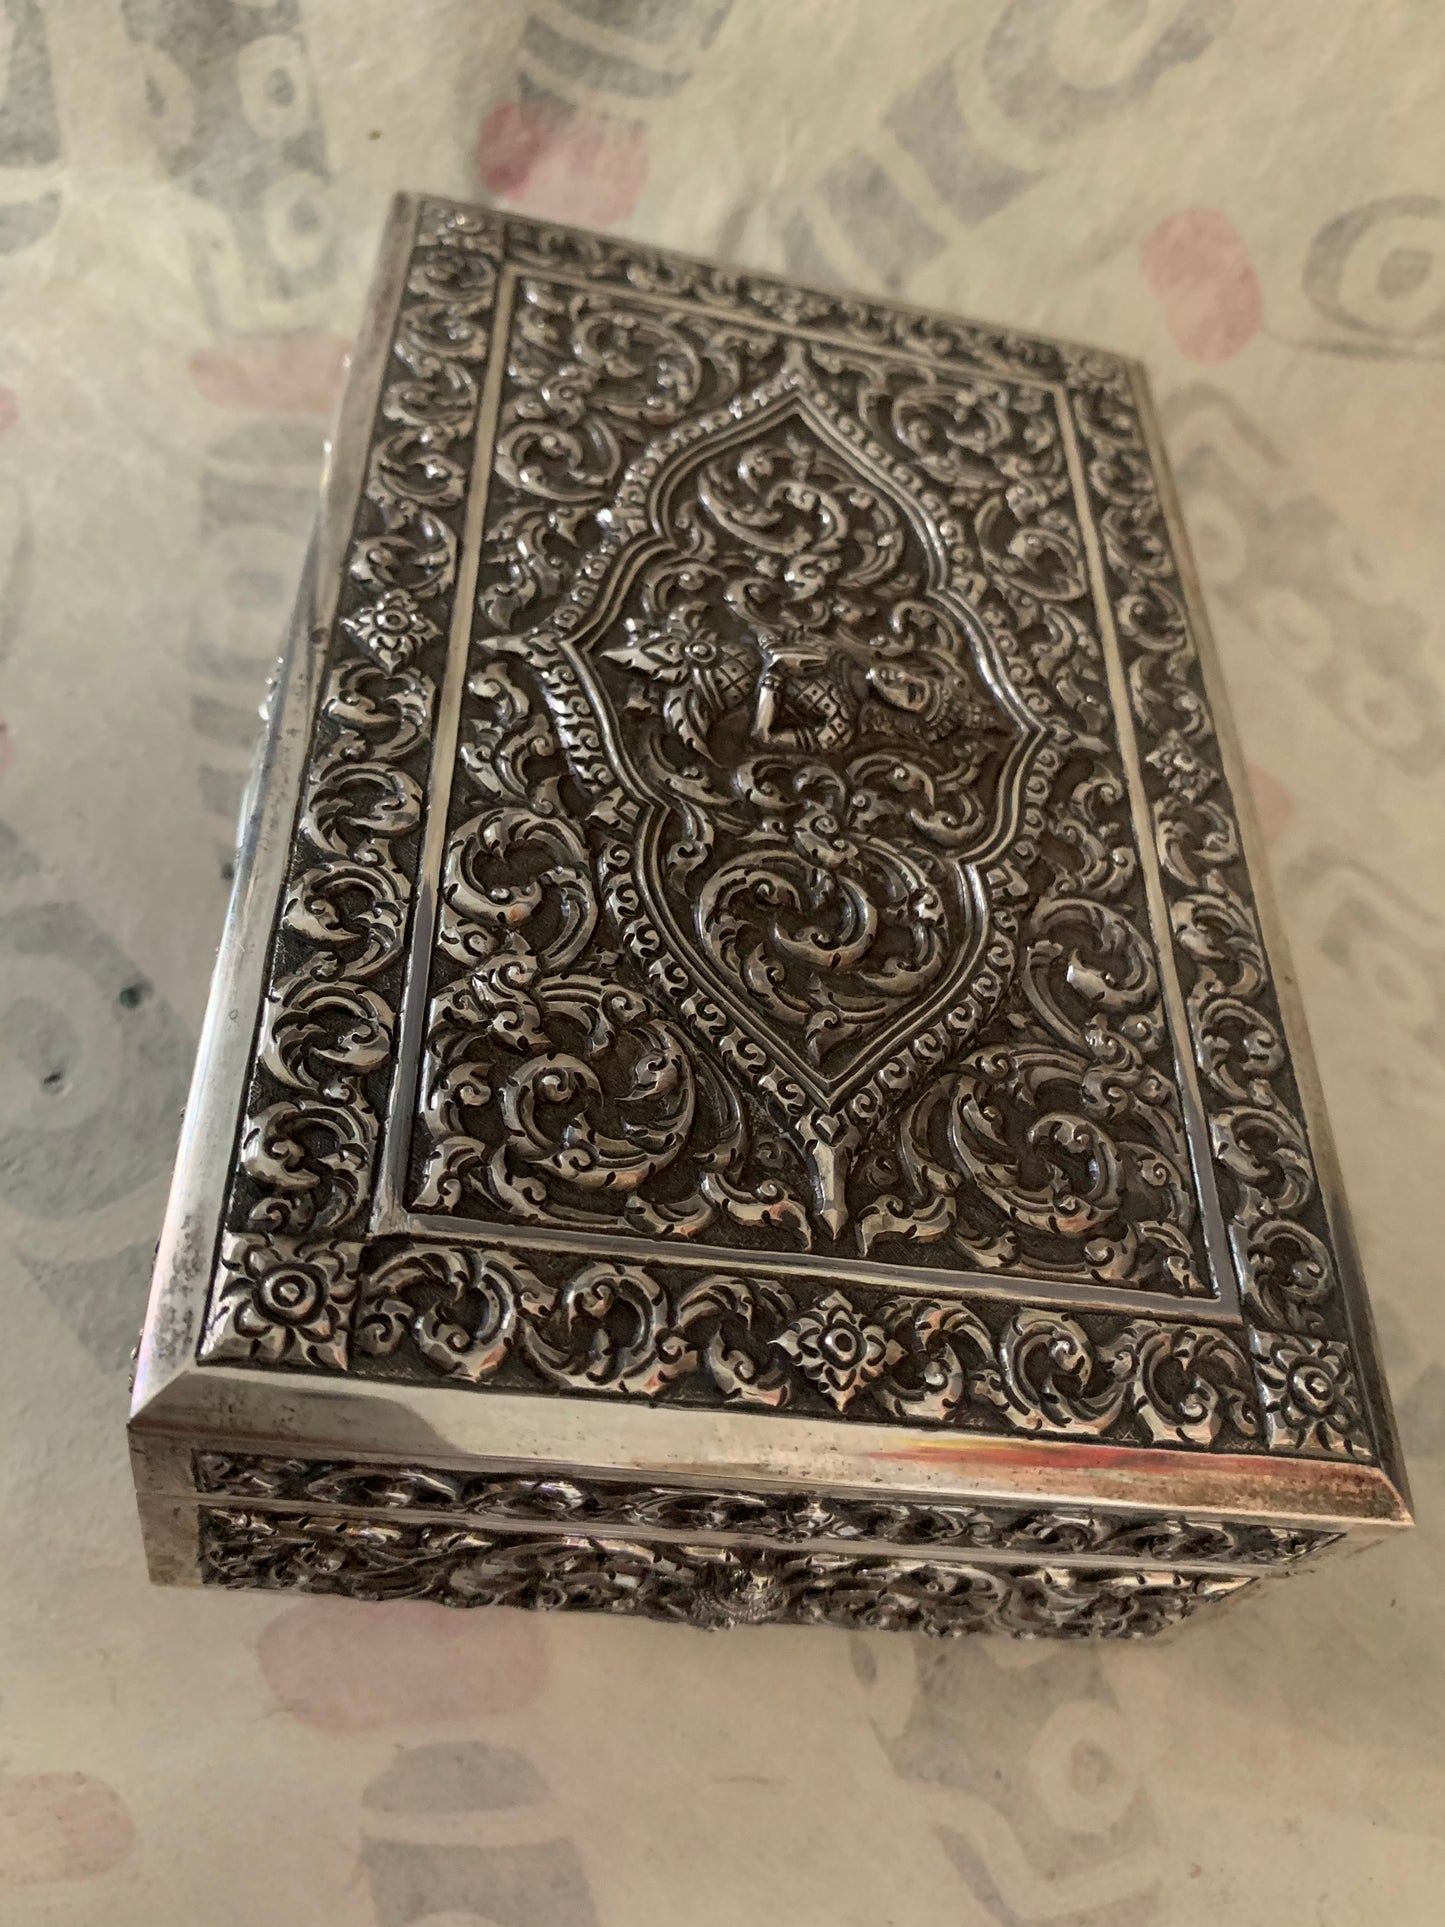 An antique Thai cigar silver box